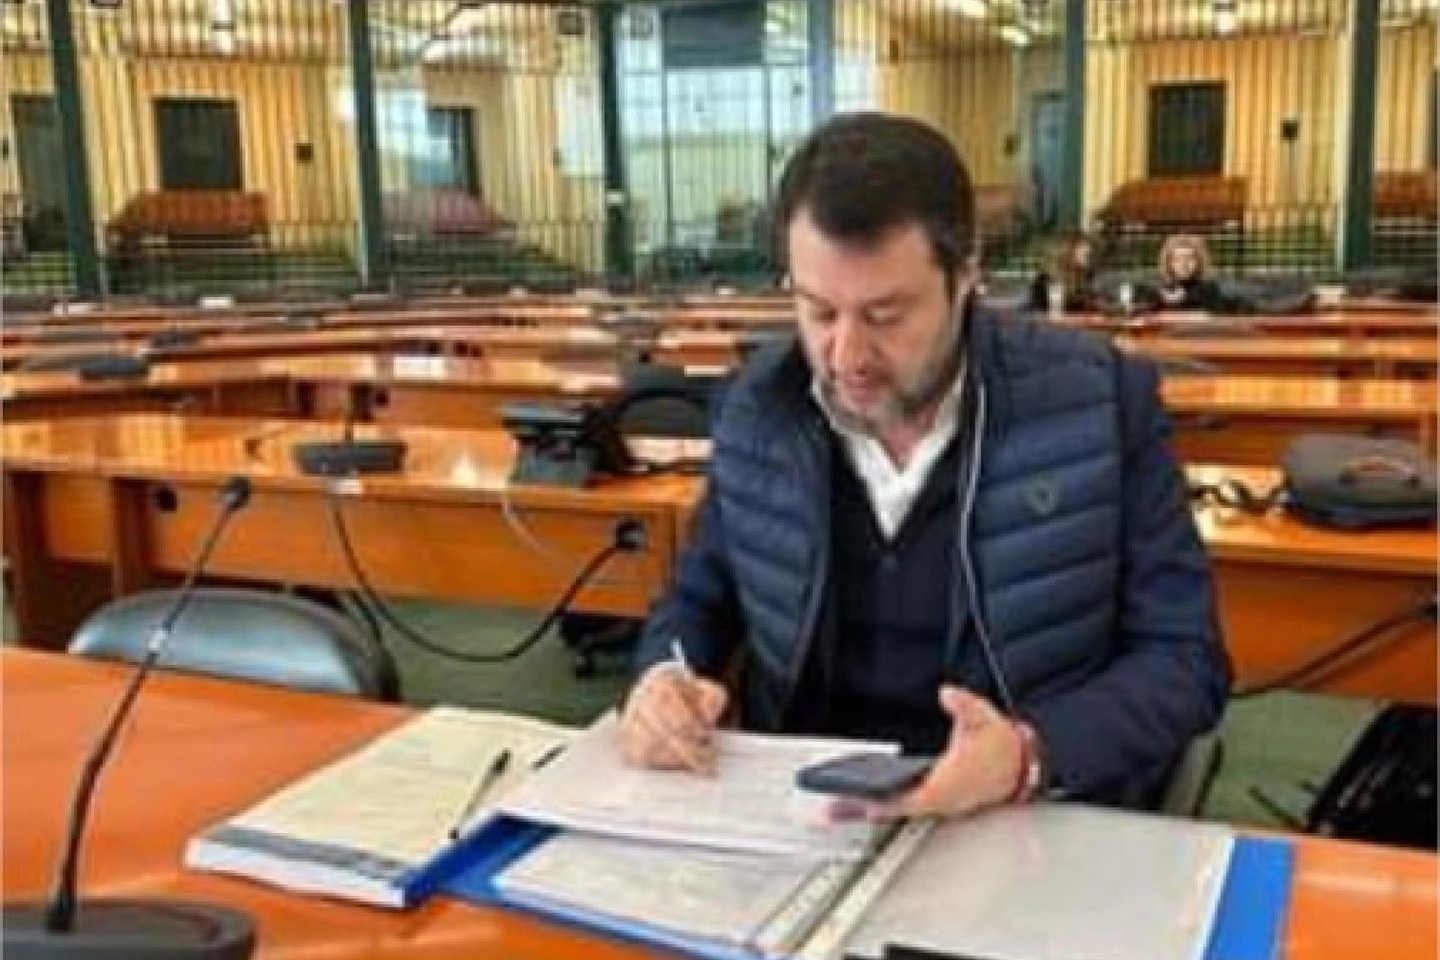  Matteo Salvini posta una foto dall'Aula bunker di Palermo (Ansa)